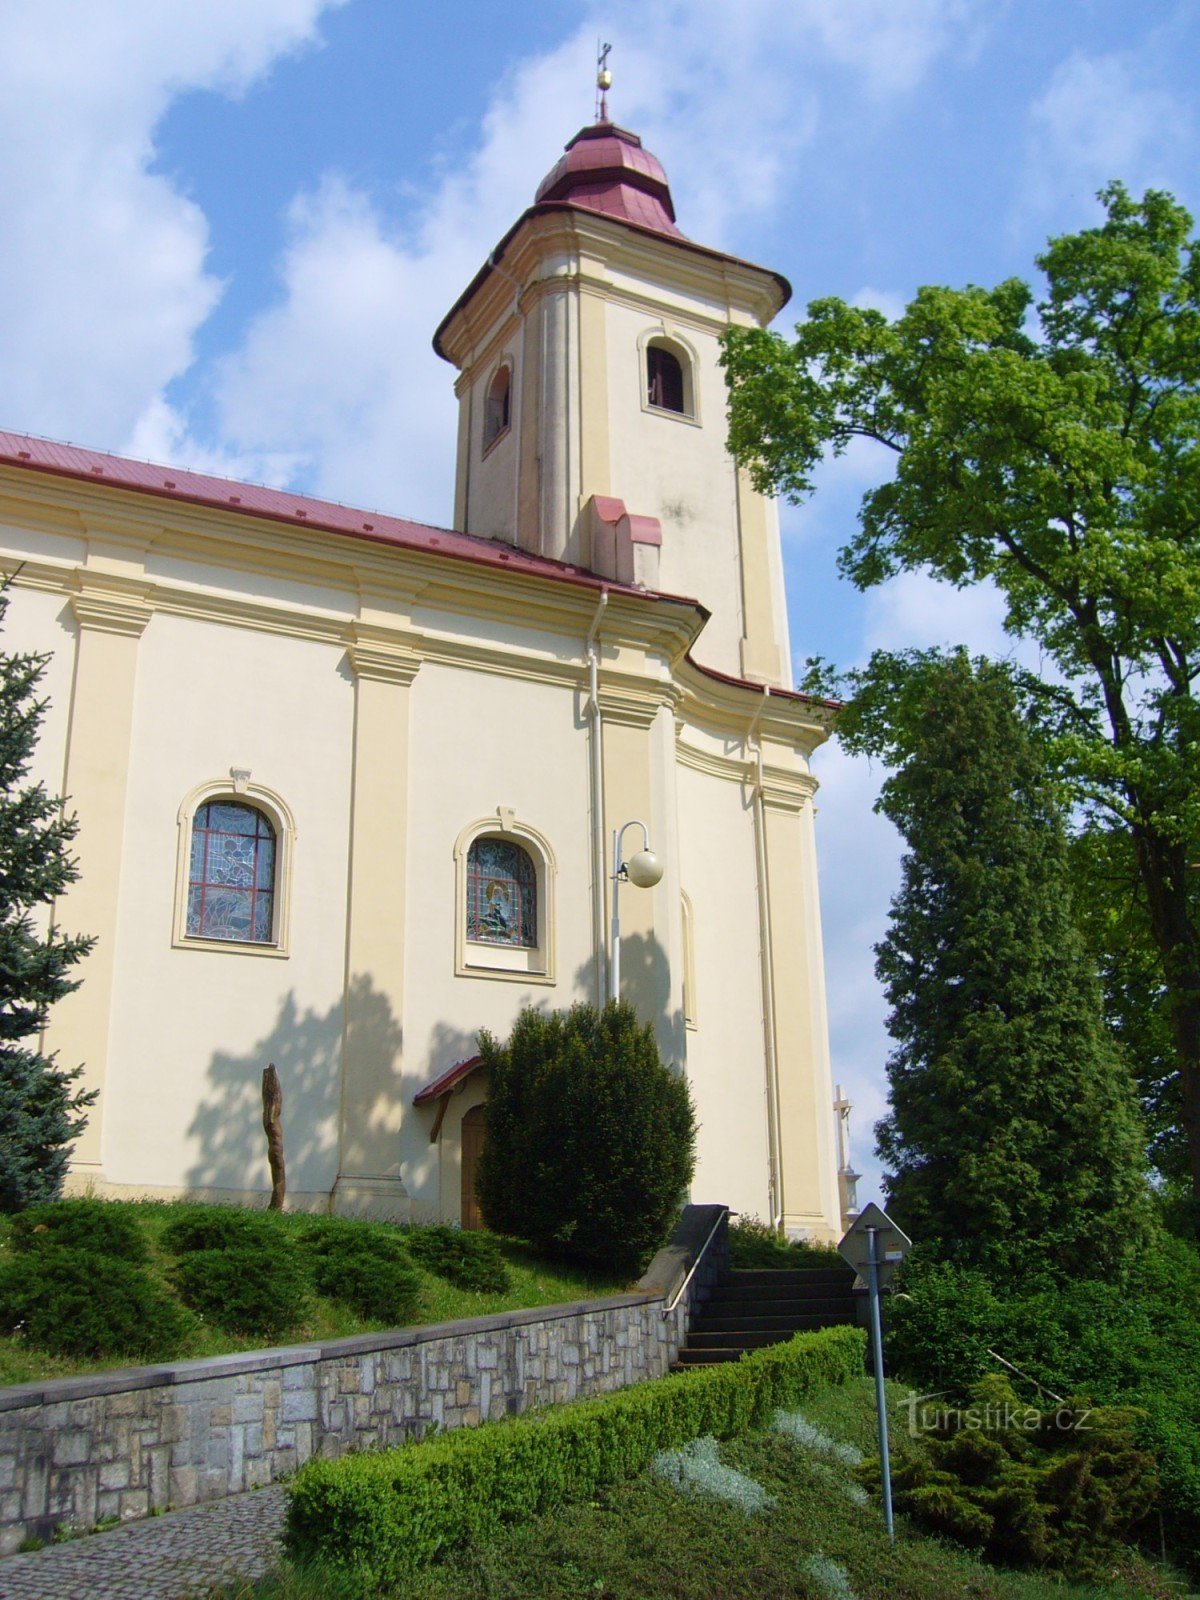 Plesná - nhà thờ St. Jakub